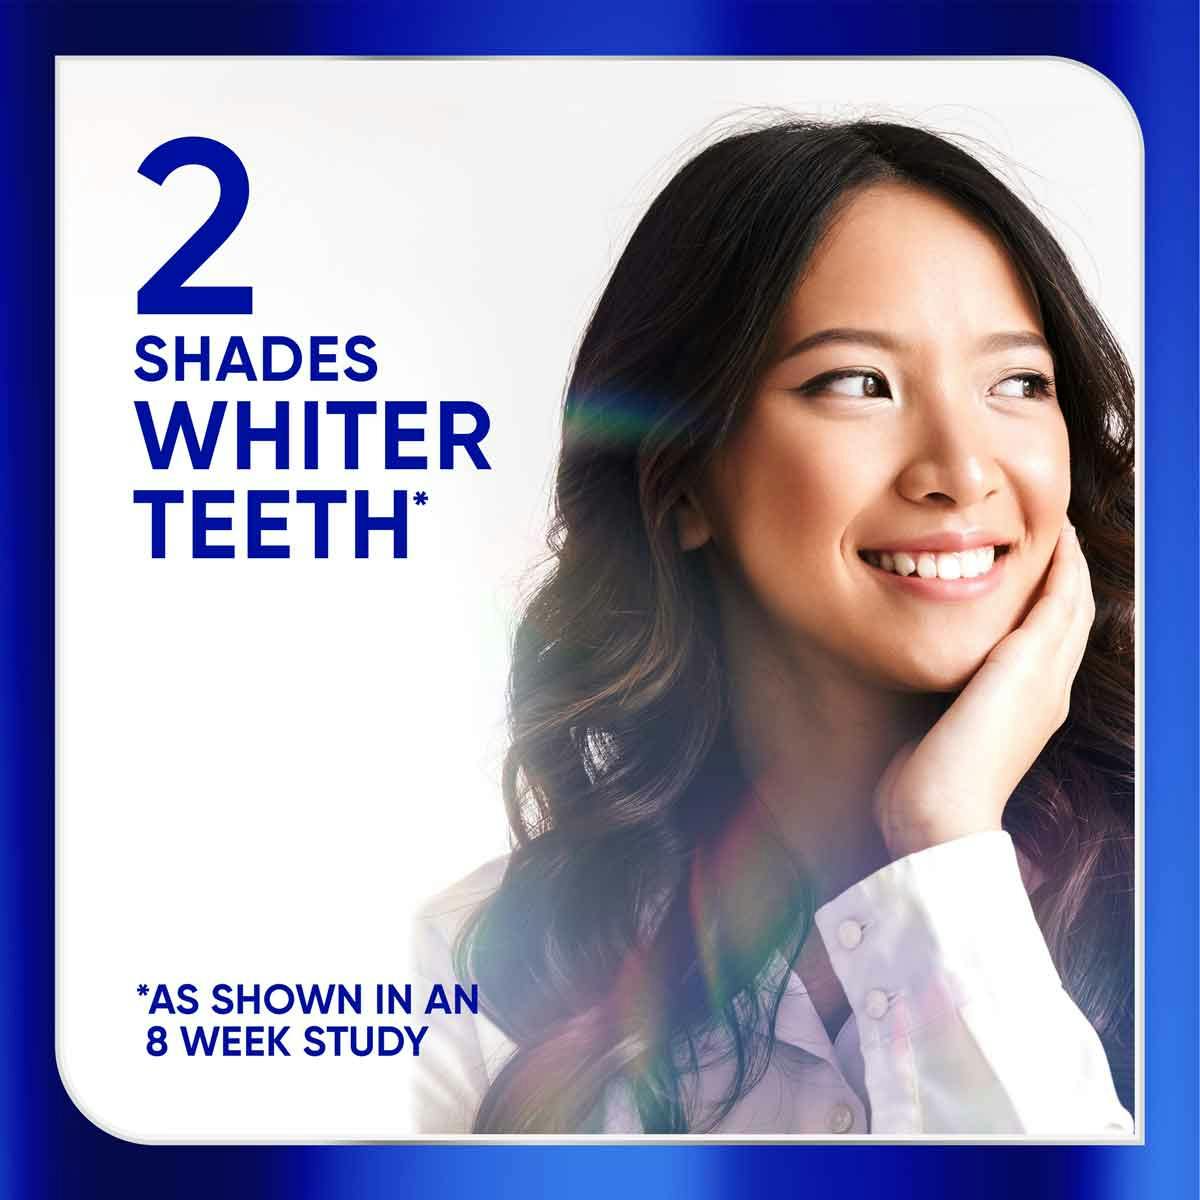 Sensodyne Clinical White 2 Shades Whiter Teeth